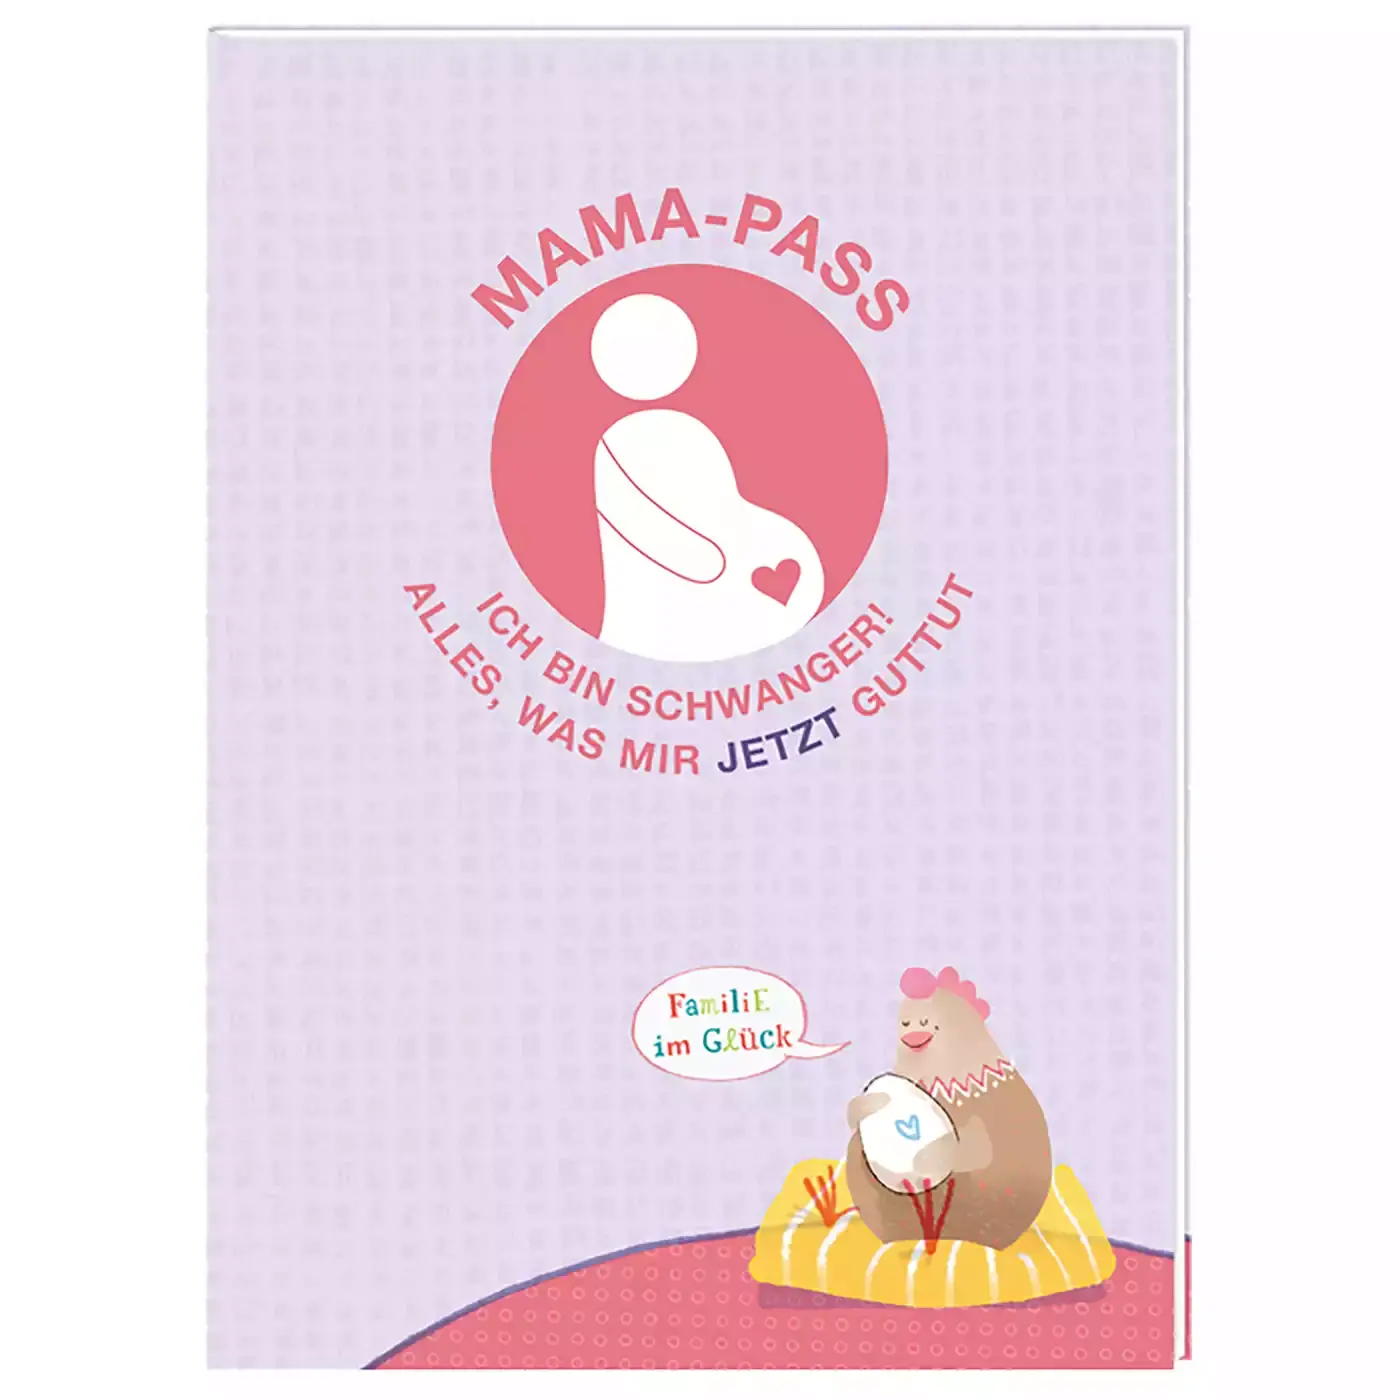 Mama-Pass - Ich bin schwanger! COPPENRATH 2000573366600 1